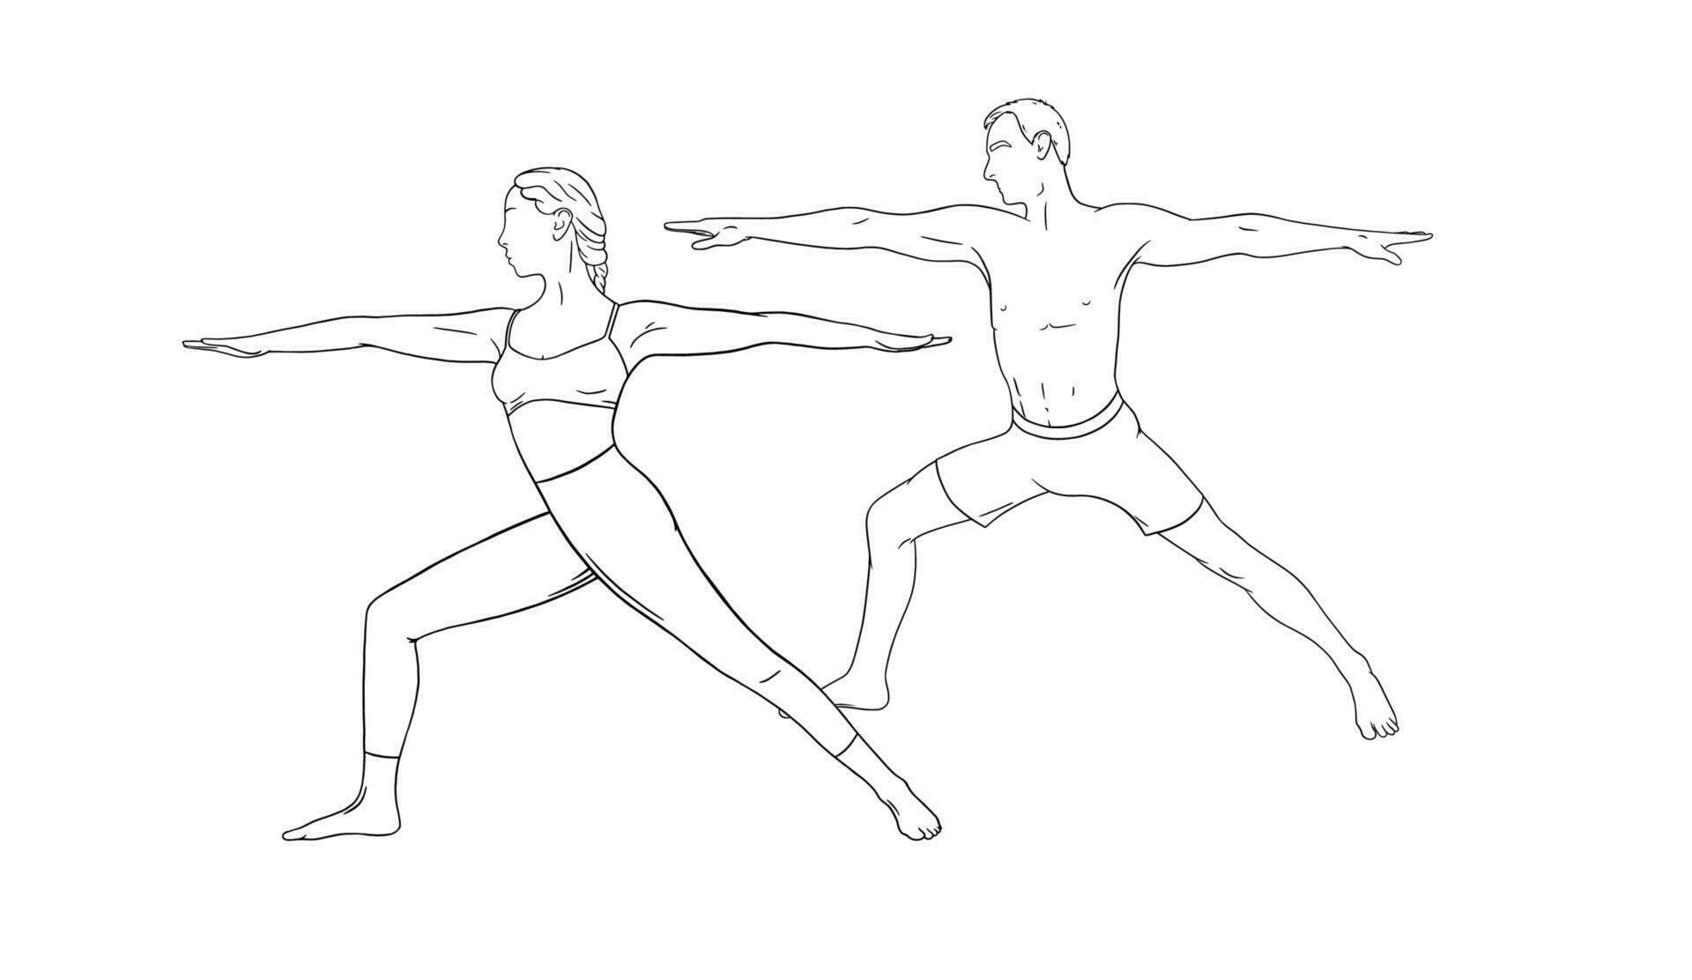 yoga guerrero asana o virabhadrasana i. mujer y hombre Pareja practicando yoga asanas mano dibujado vector ilustración